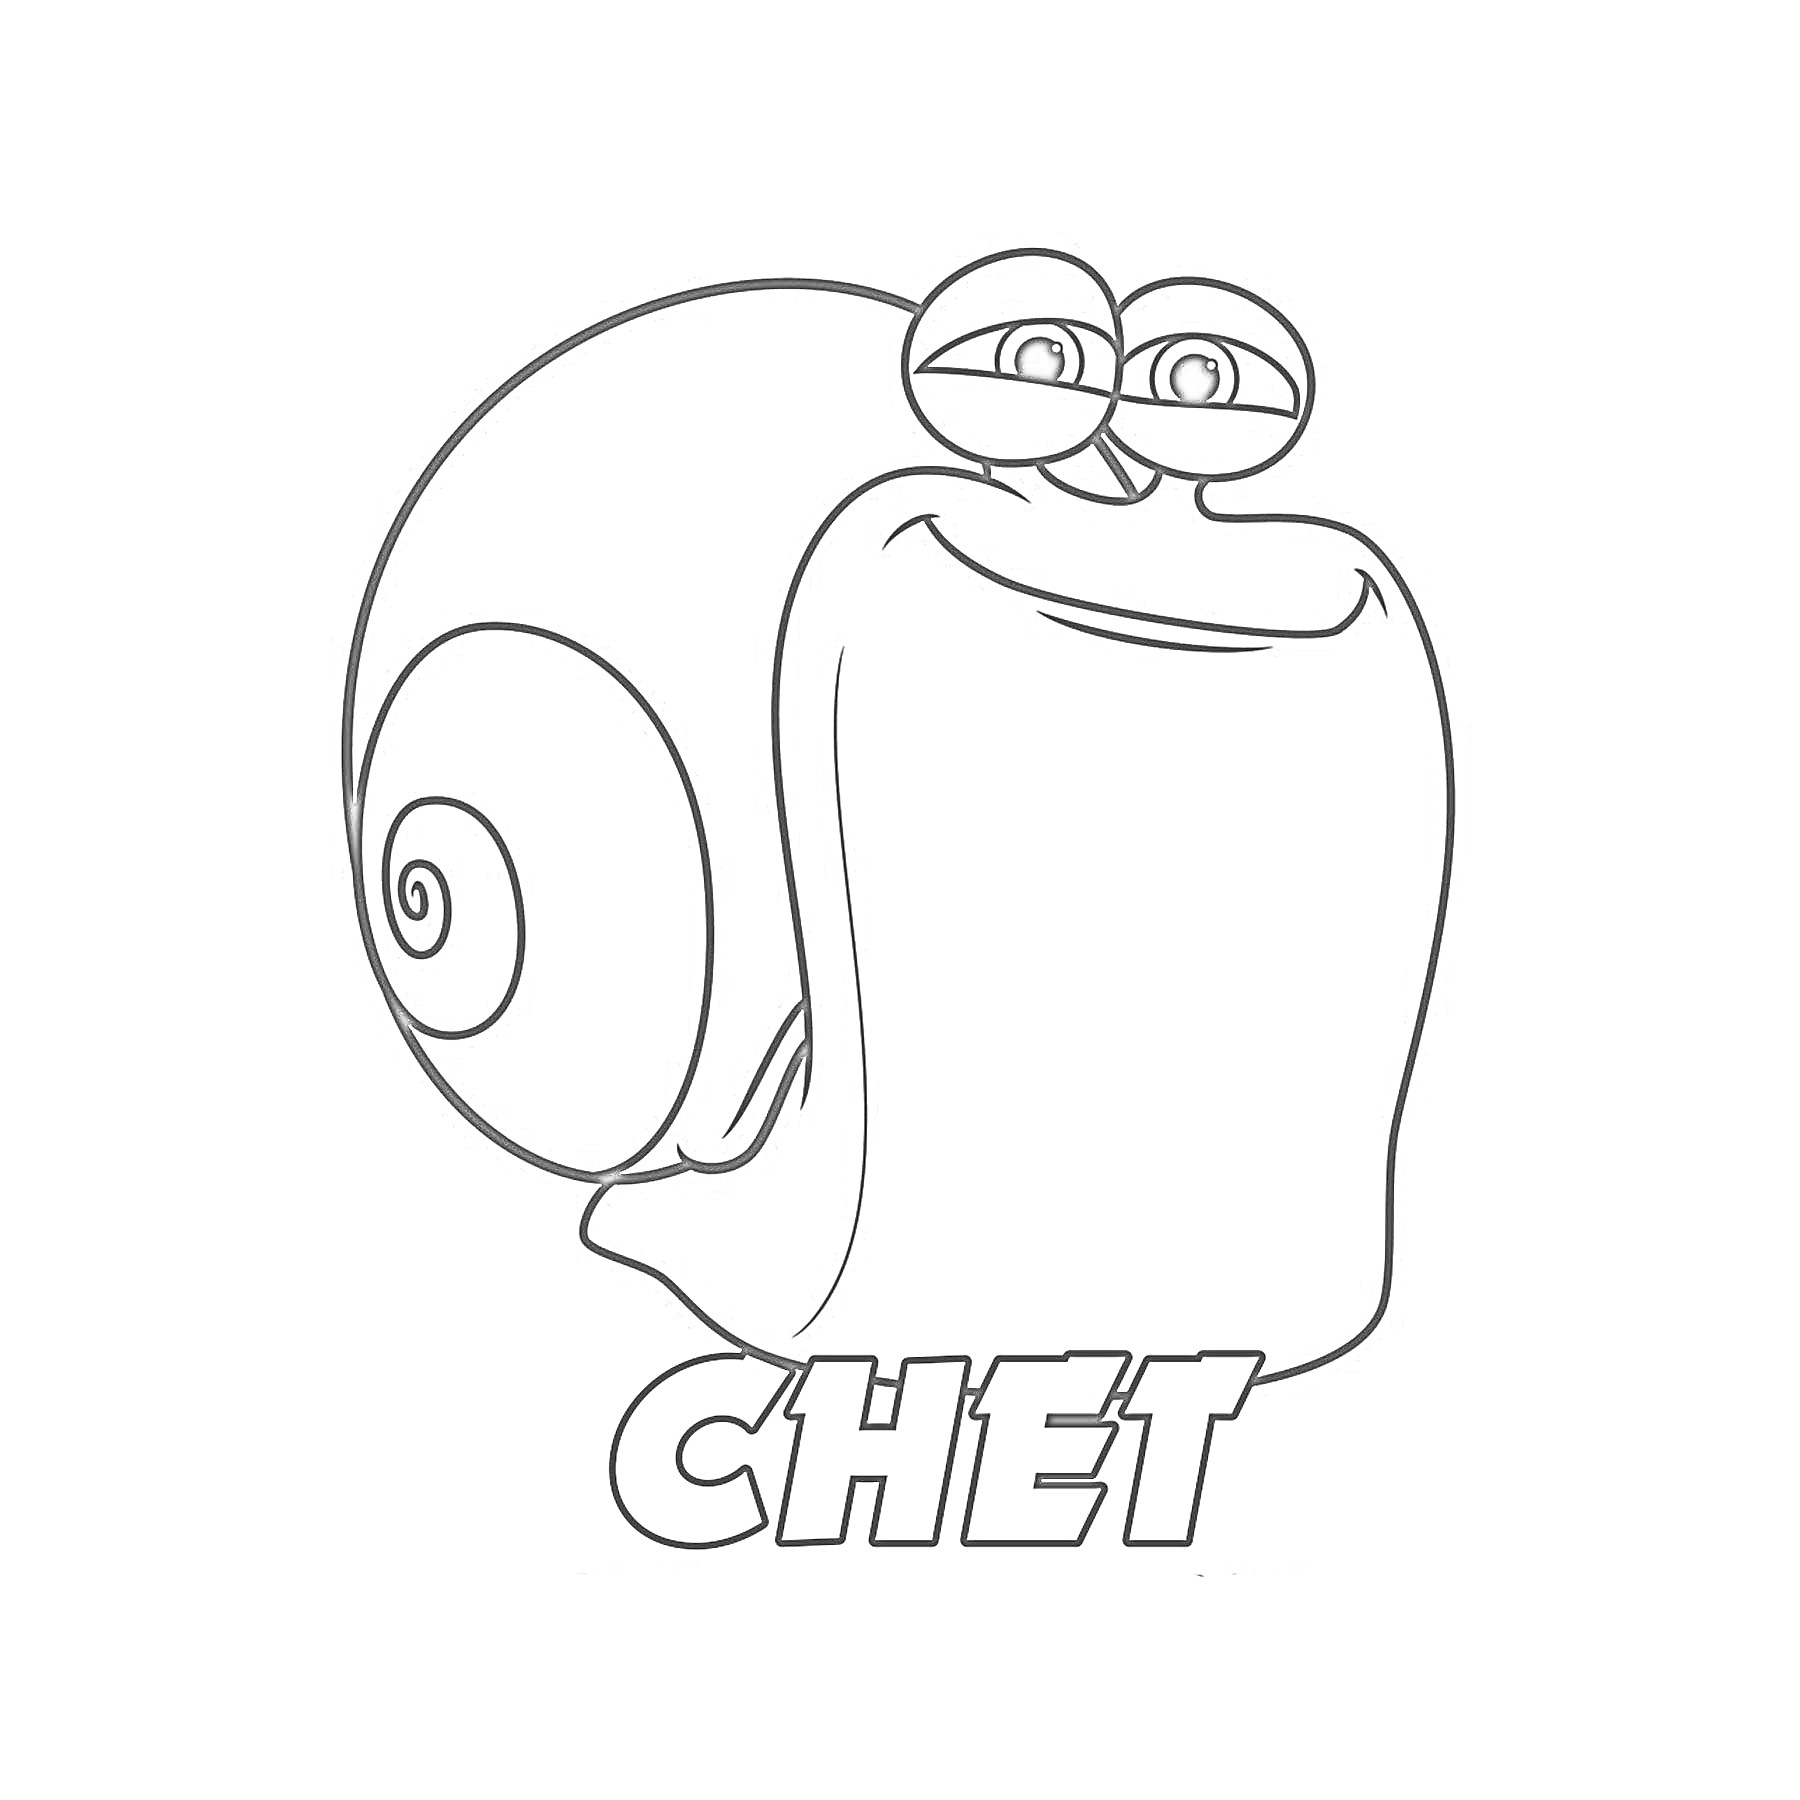 Раскраска Улитка с надписью Chet из мультфильма 